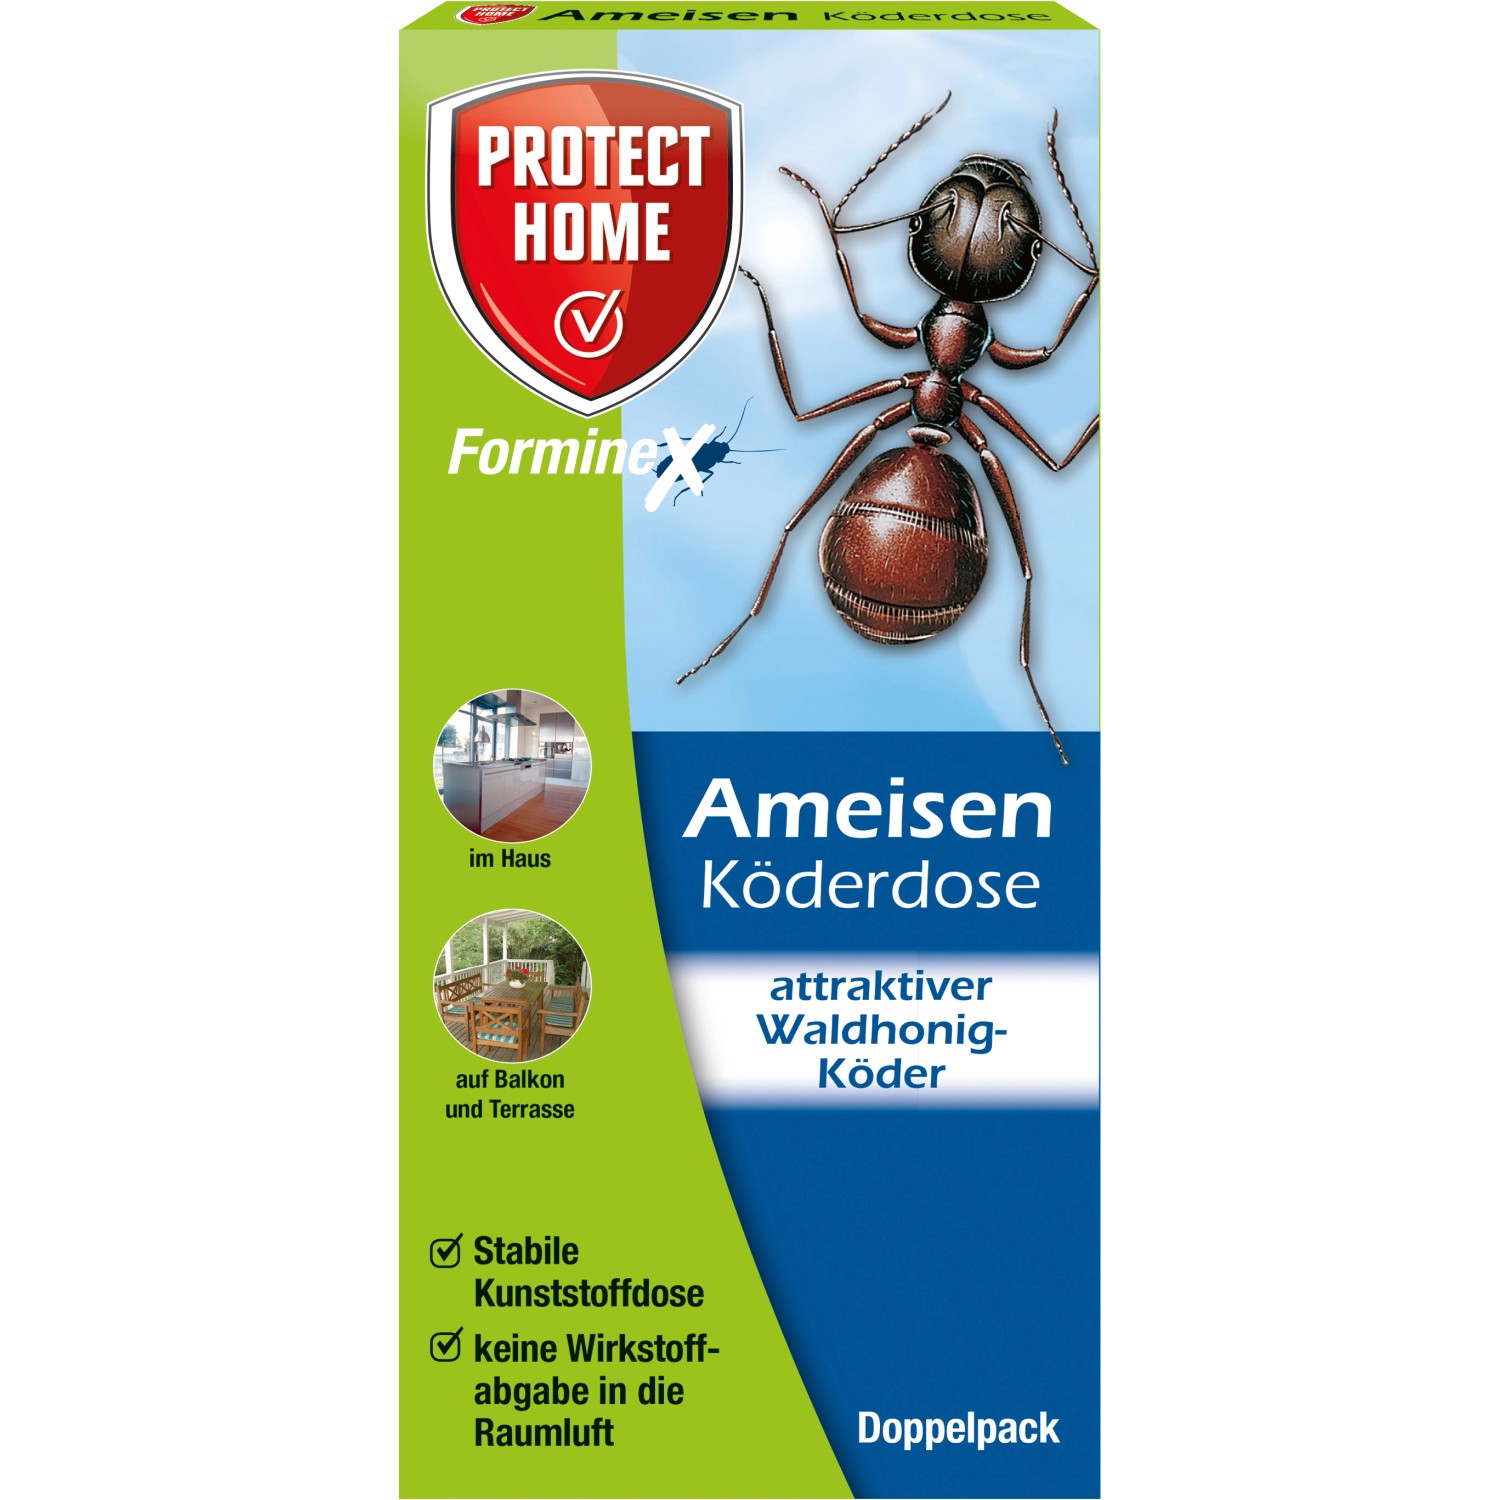 Protect Home FormineX Ameisen Köderdose 2 Stück